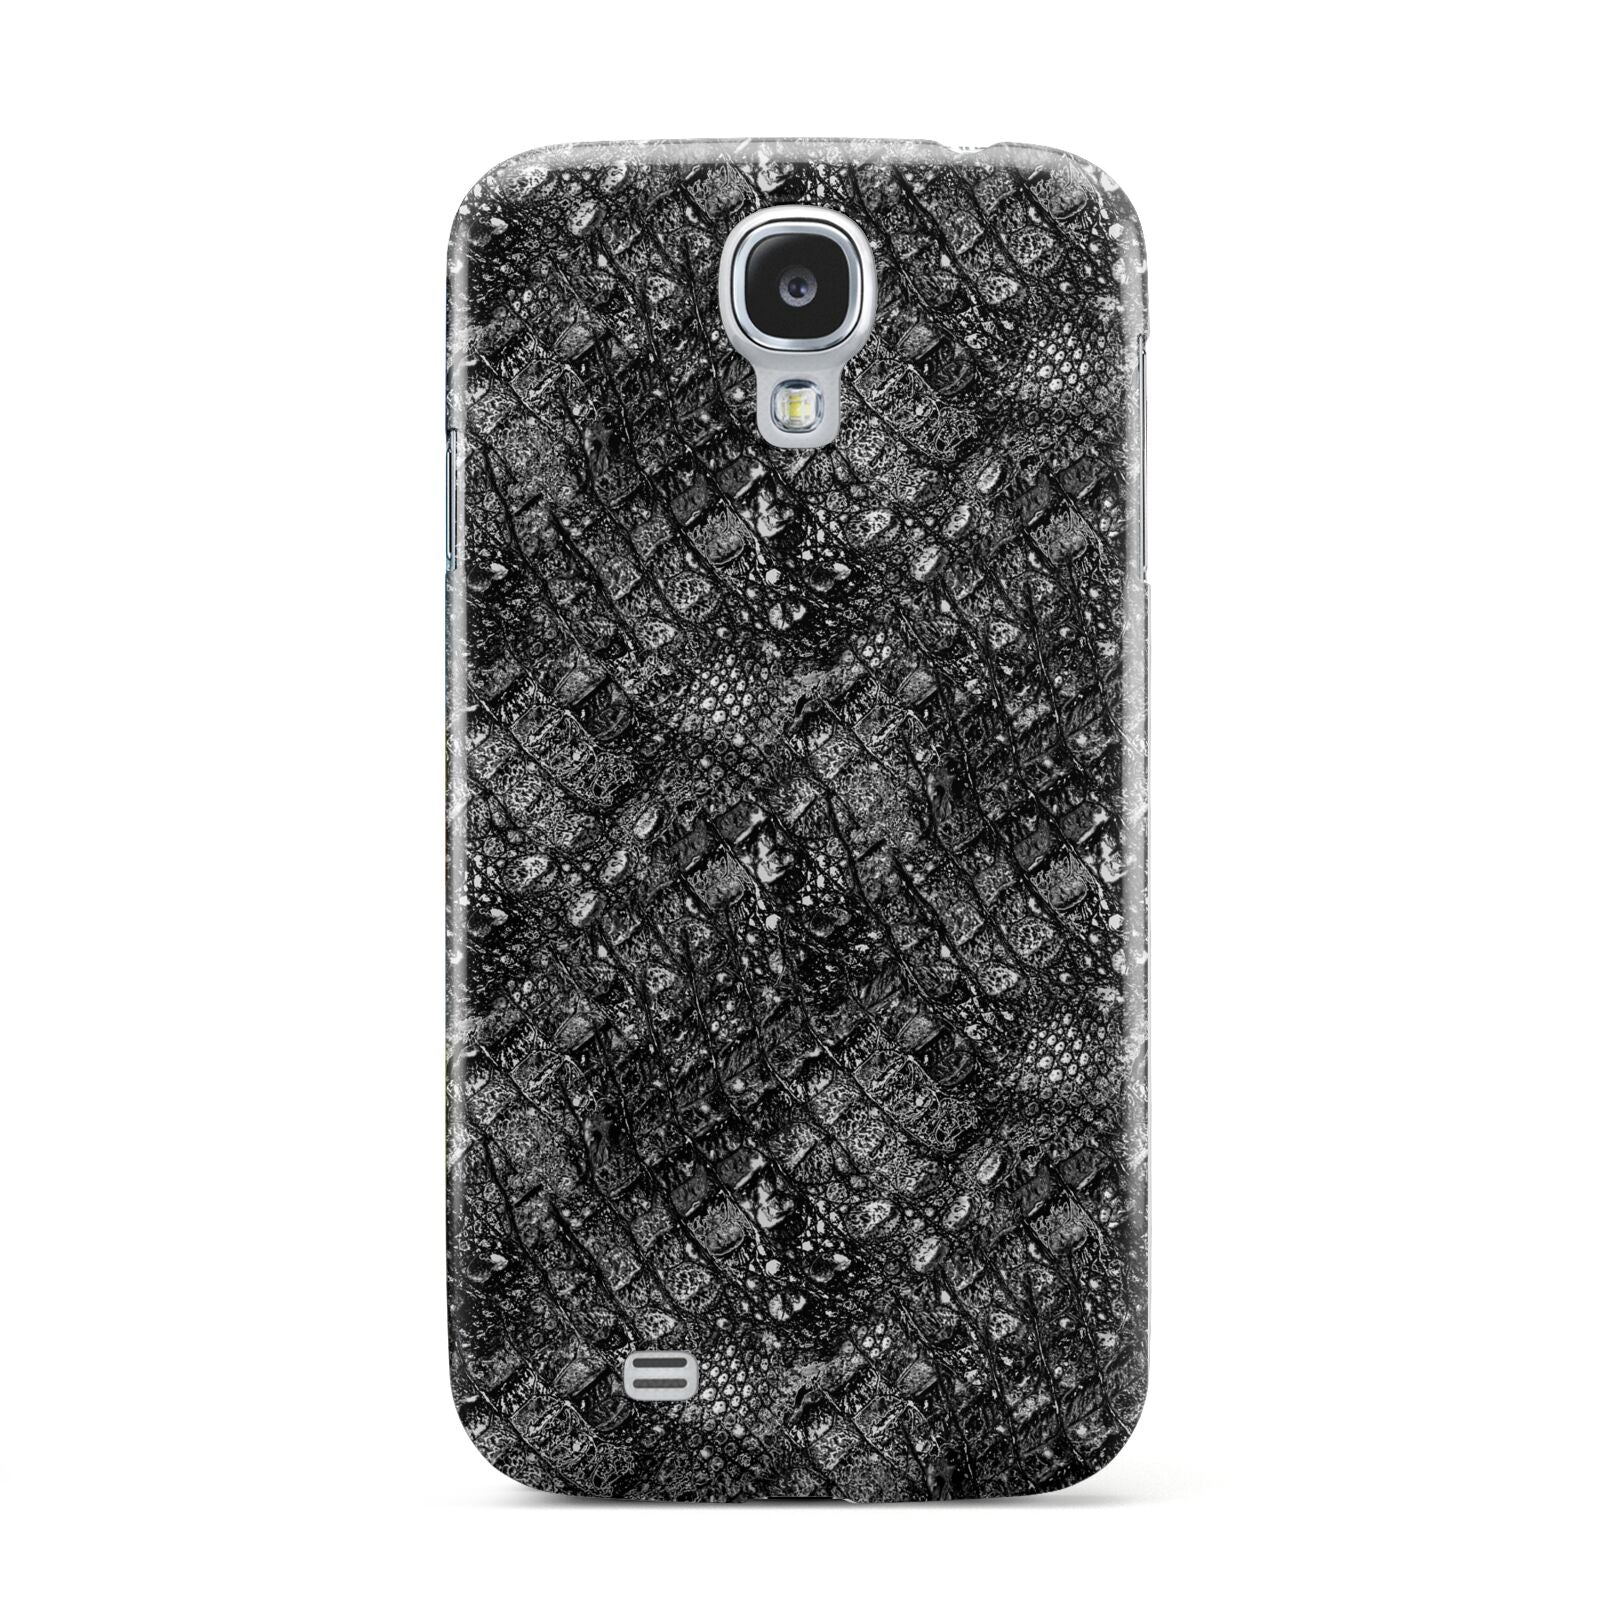 Snakeskin Design Samsung Galaxy S4 Case